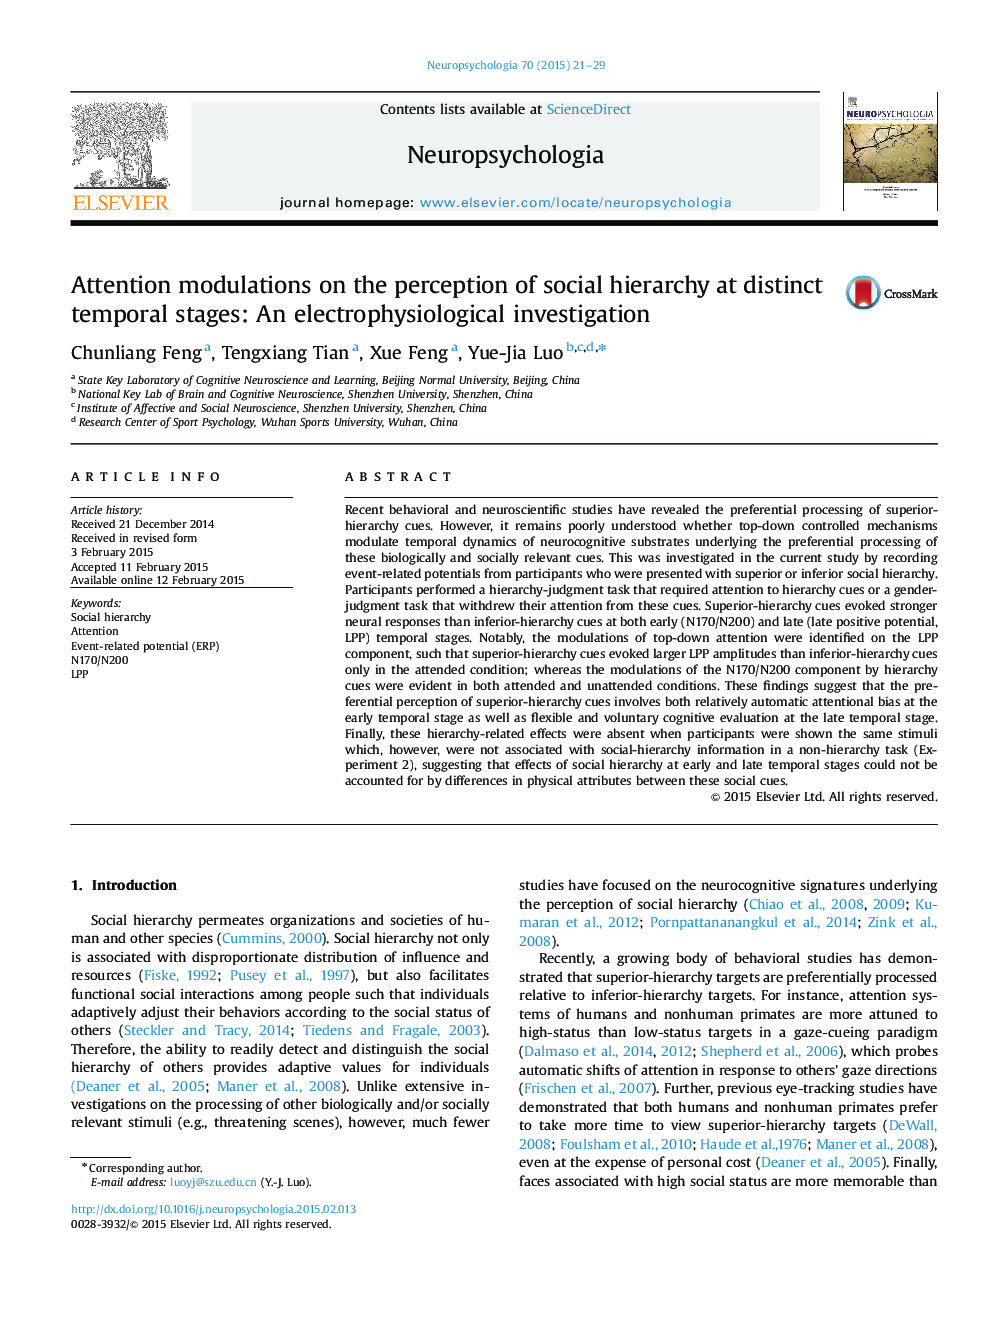 تعدیل توجه در ادراک سلسله مراتب اجتماعی در مراحل زمانی متمایز: یک مطالعه الکتروفیزیولوژیک 